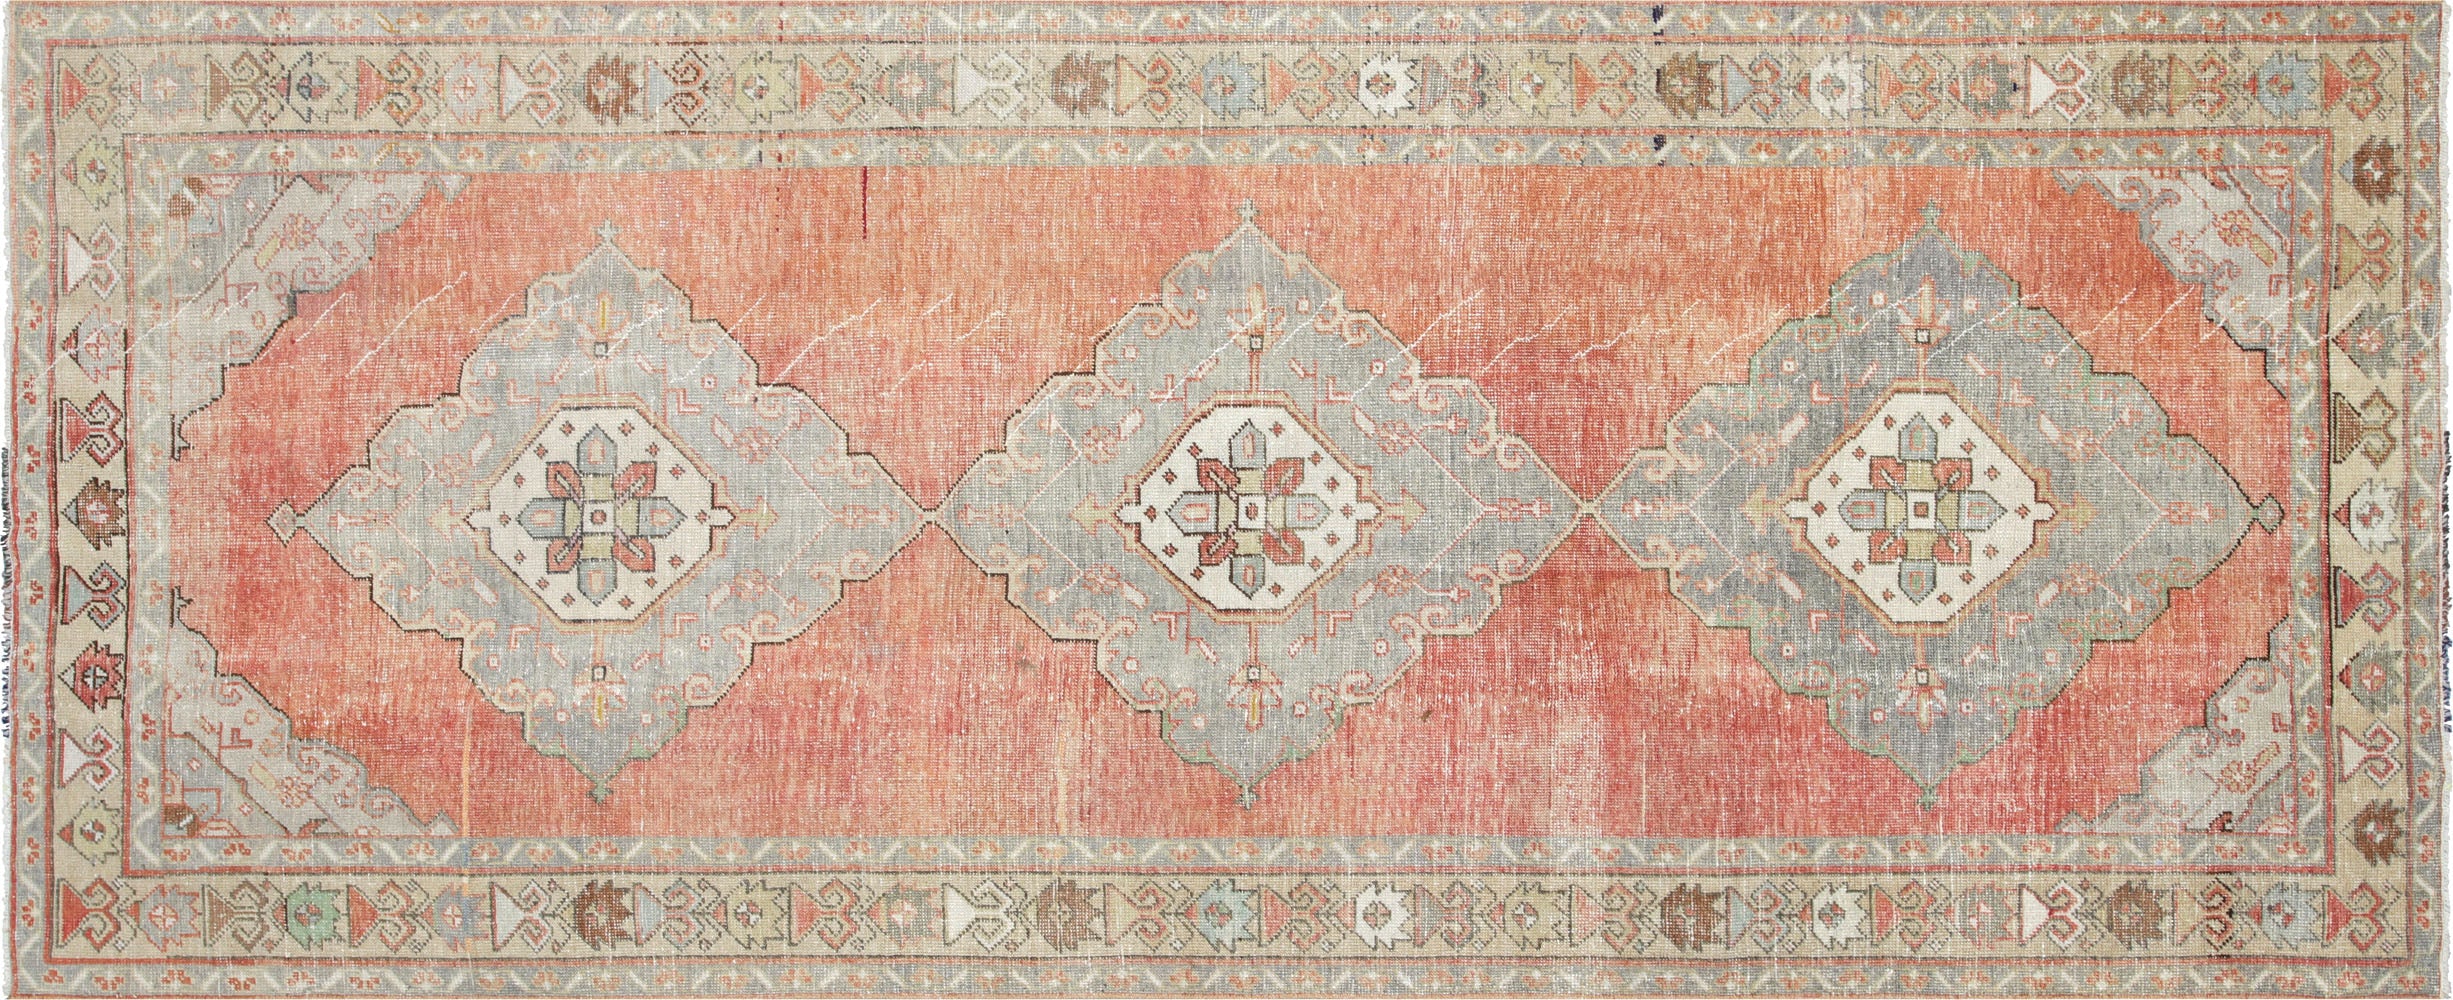 Vintage Turkish Oushak Carpet - 4'8" x 11'7"